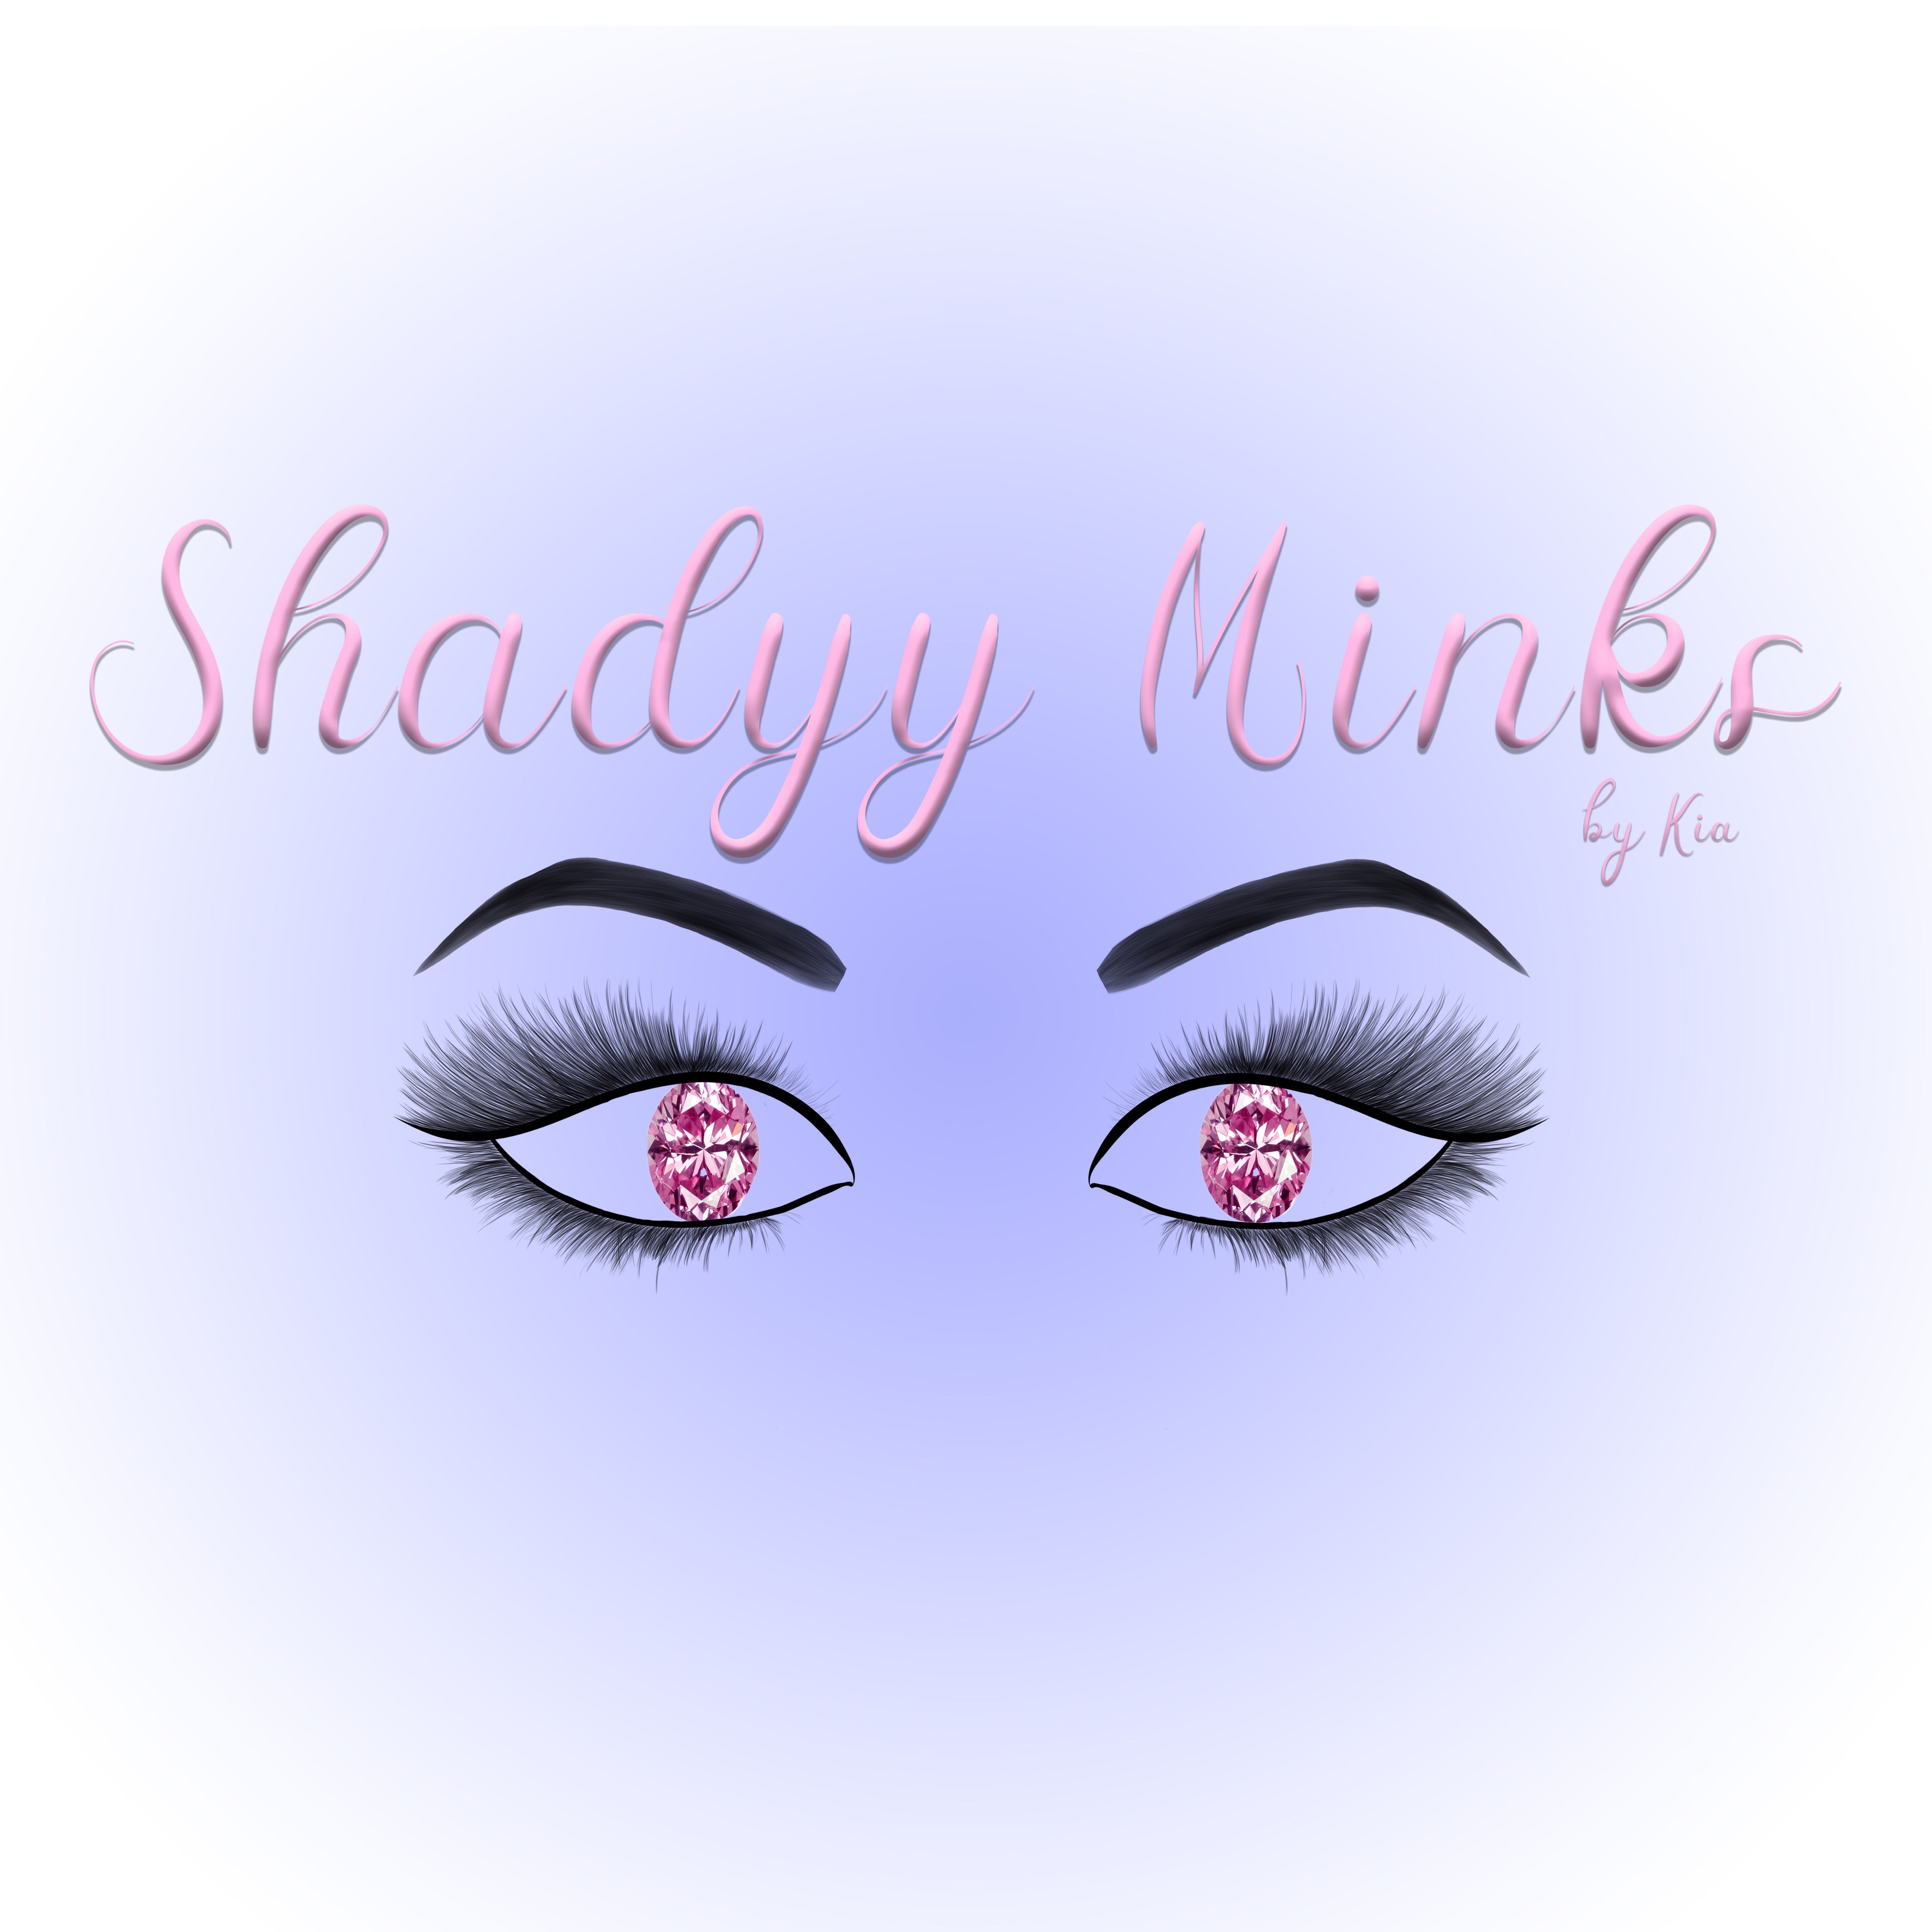 Shadyy Minks